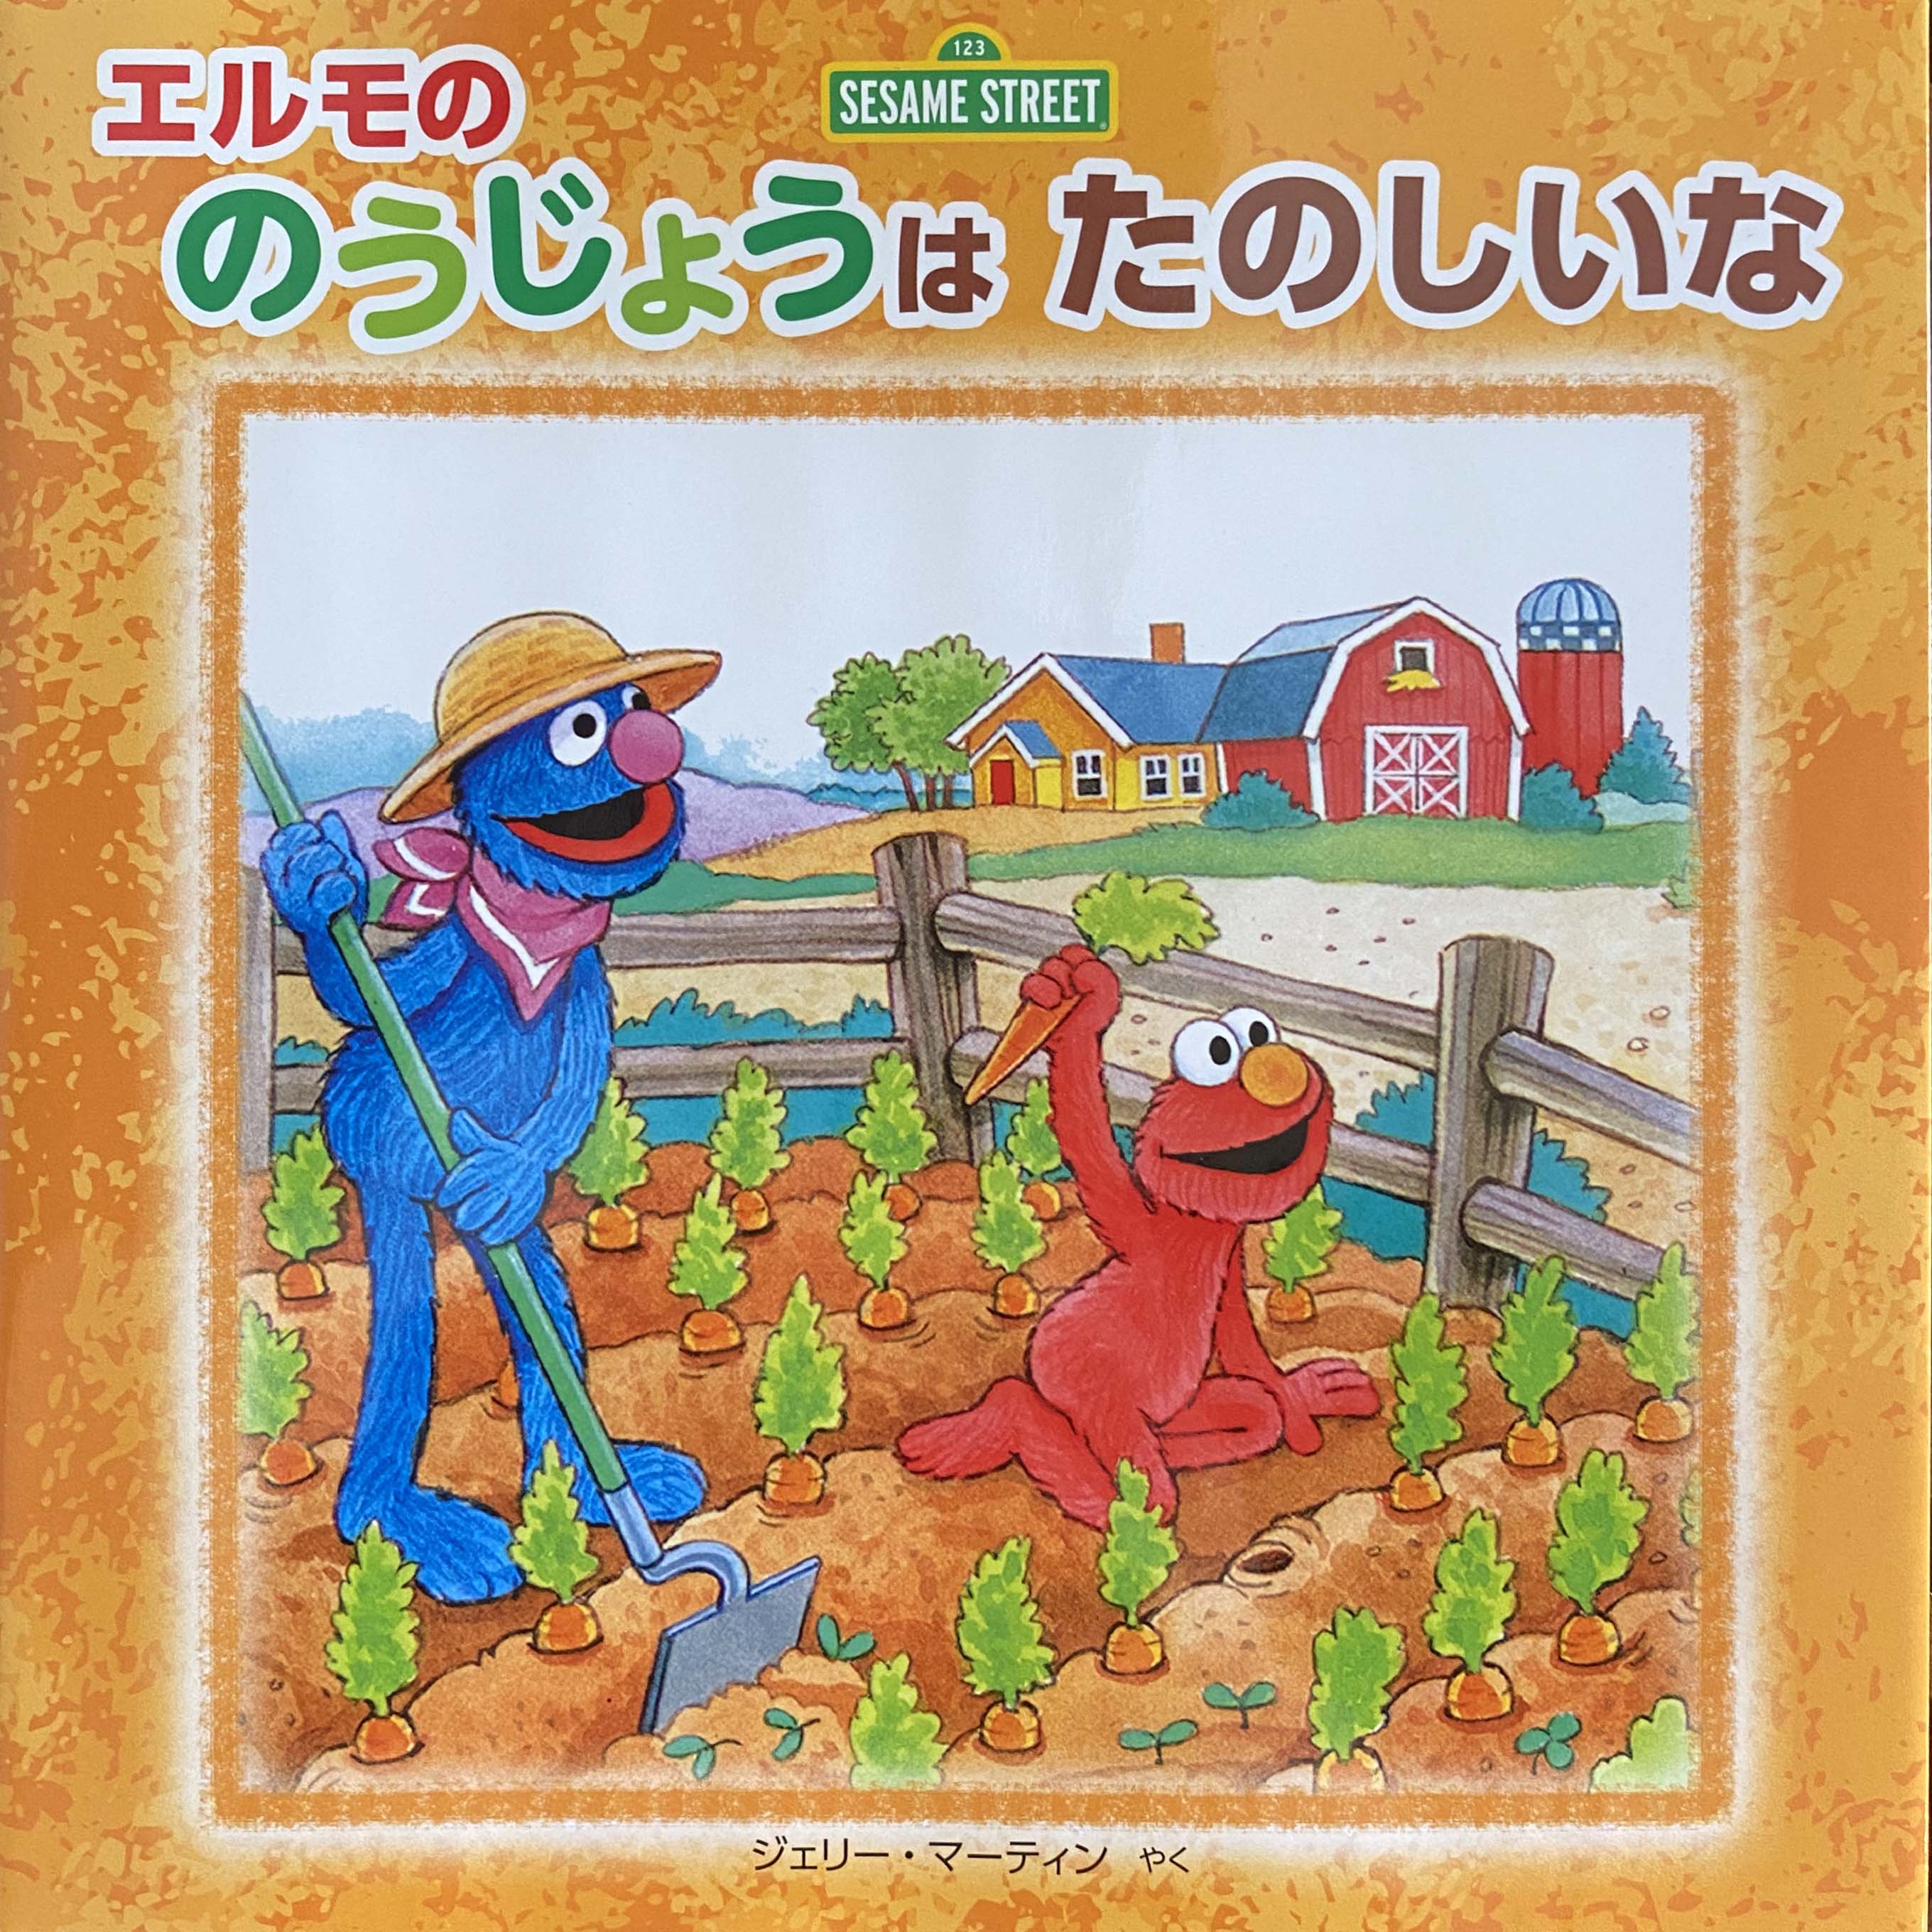 Grover and Elmo at a farm 